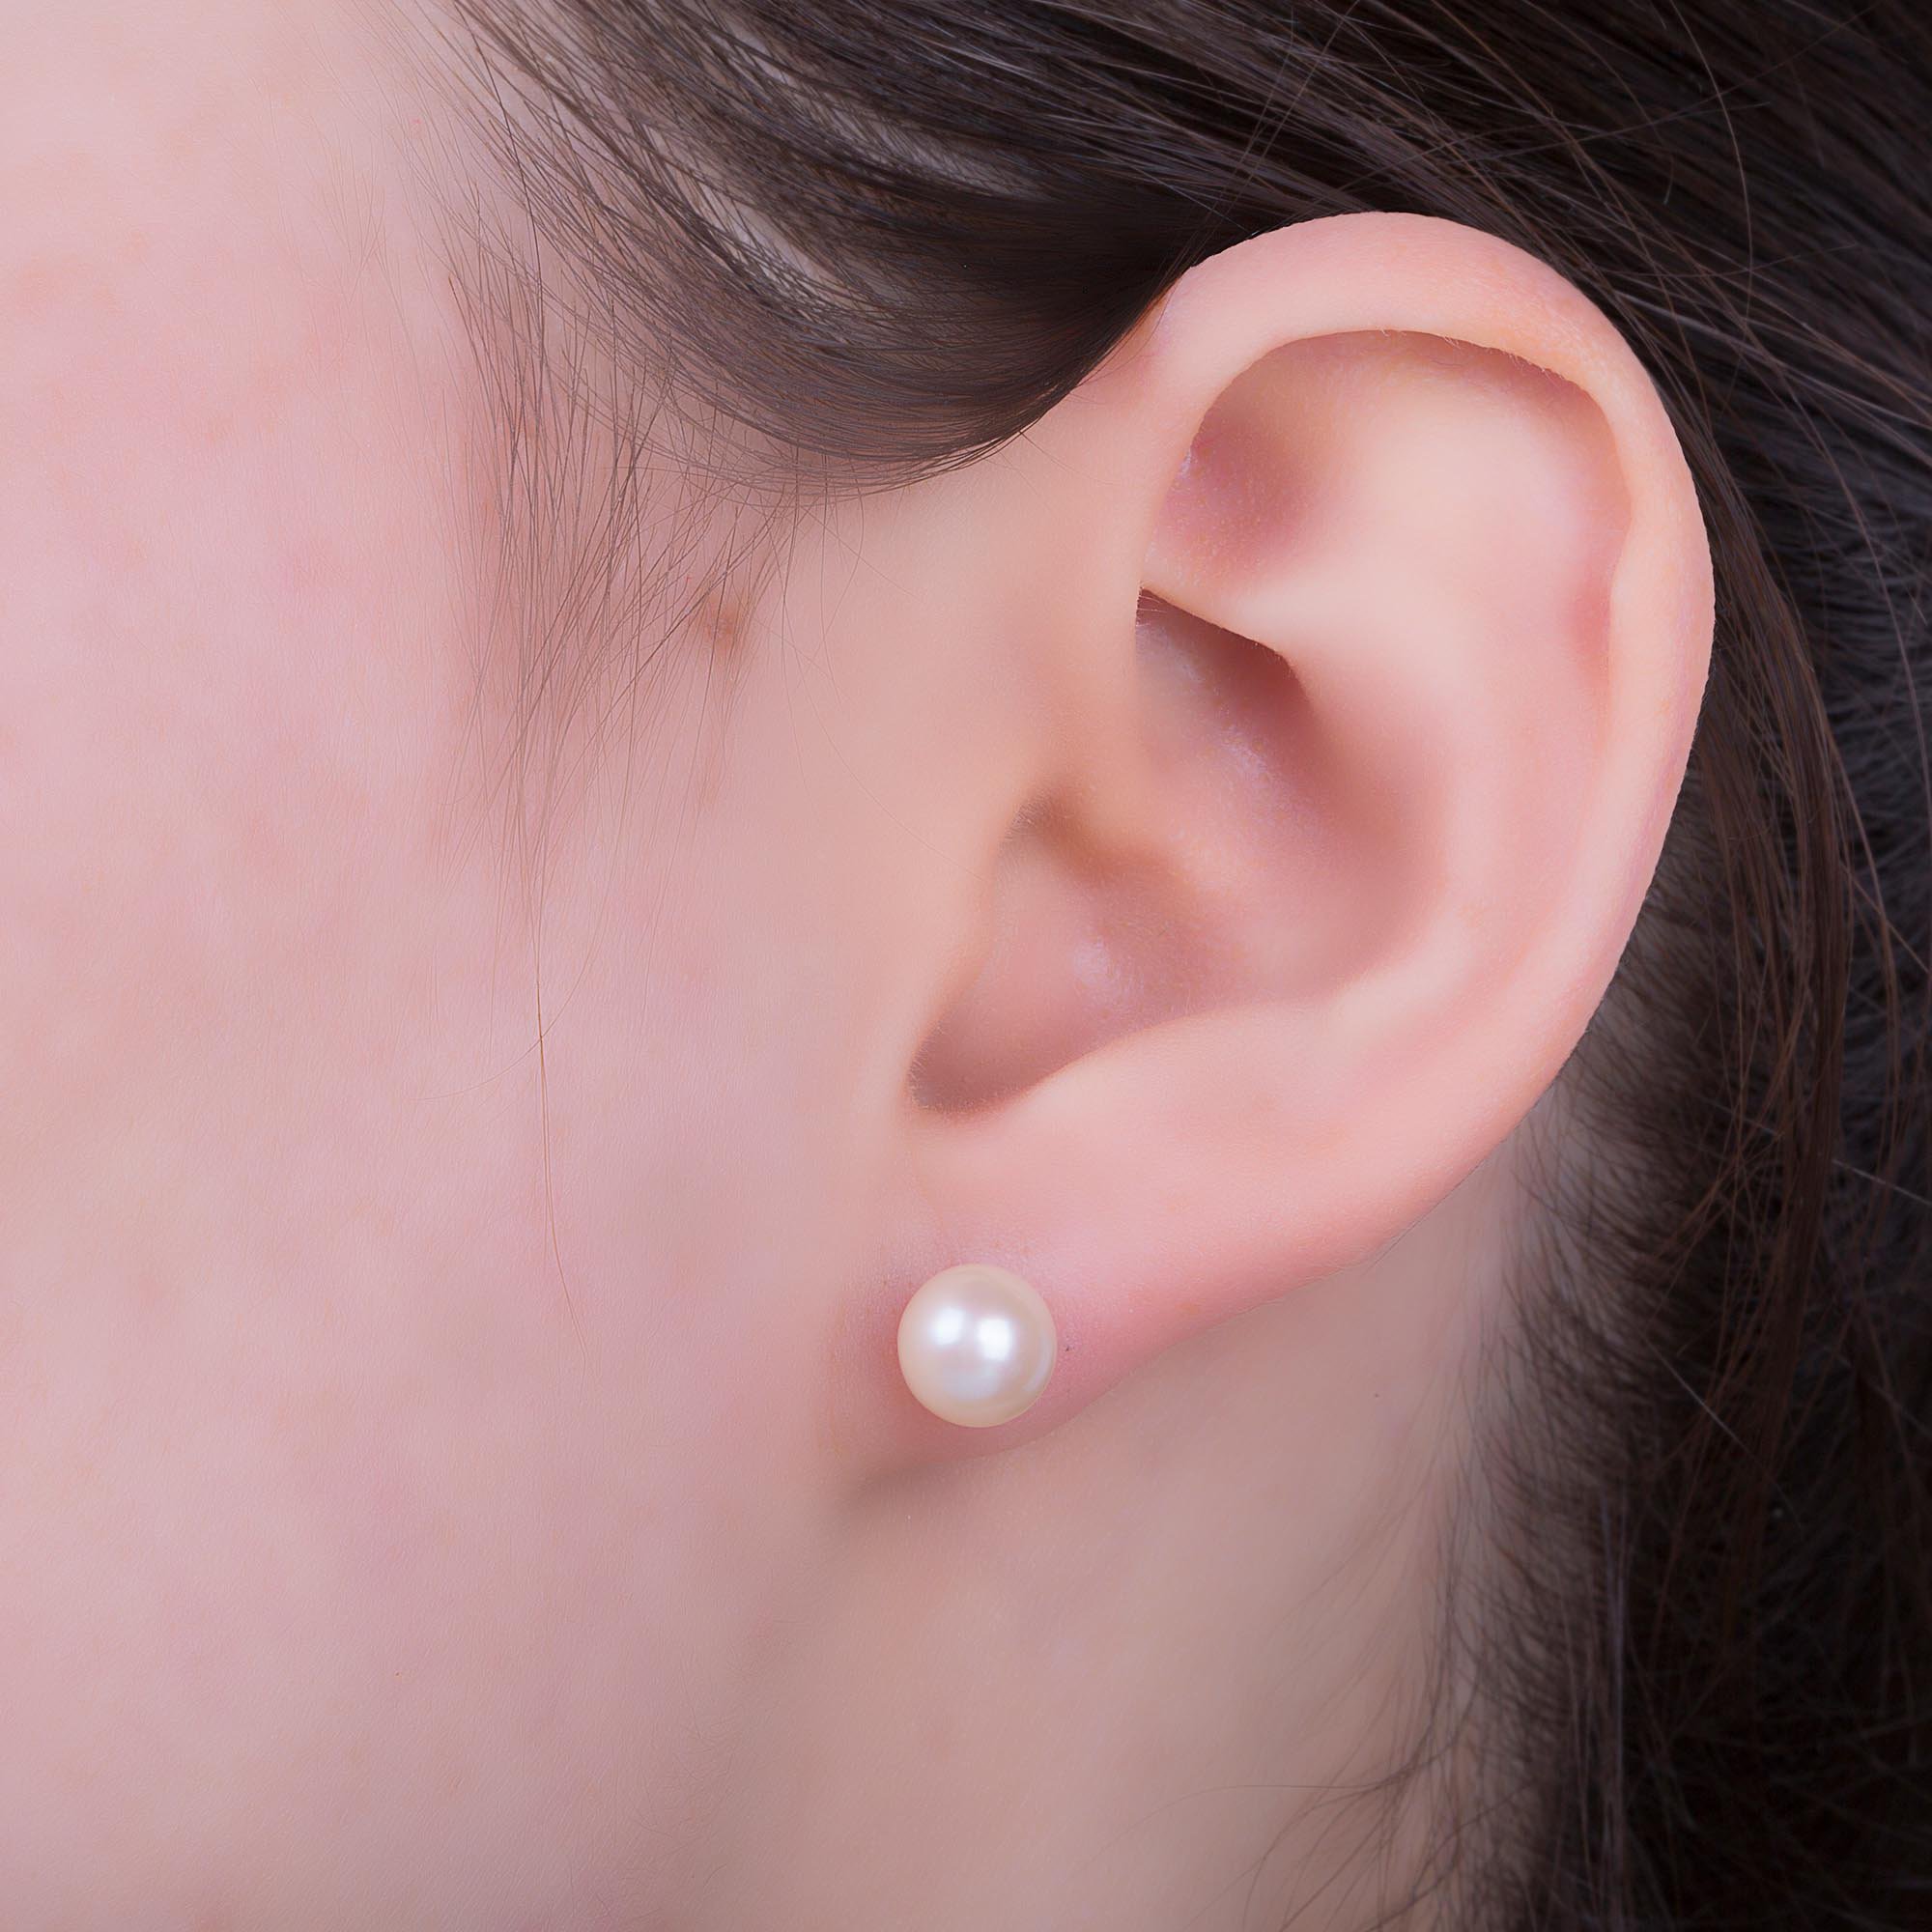 Venus Akoya Pearl Stud Earrings in 18K Rose Gold 7.0 to 7.5mm #2